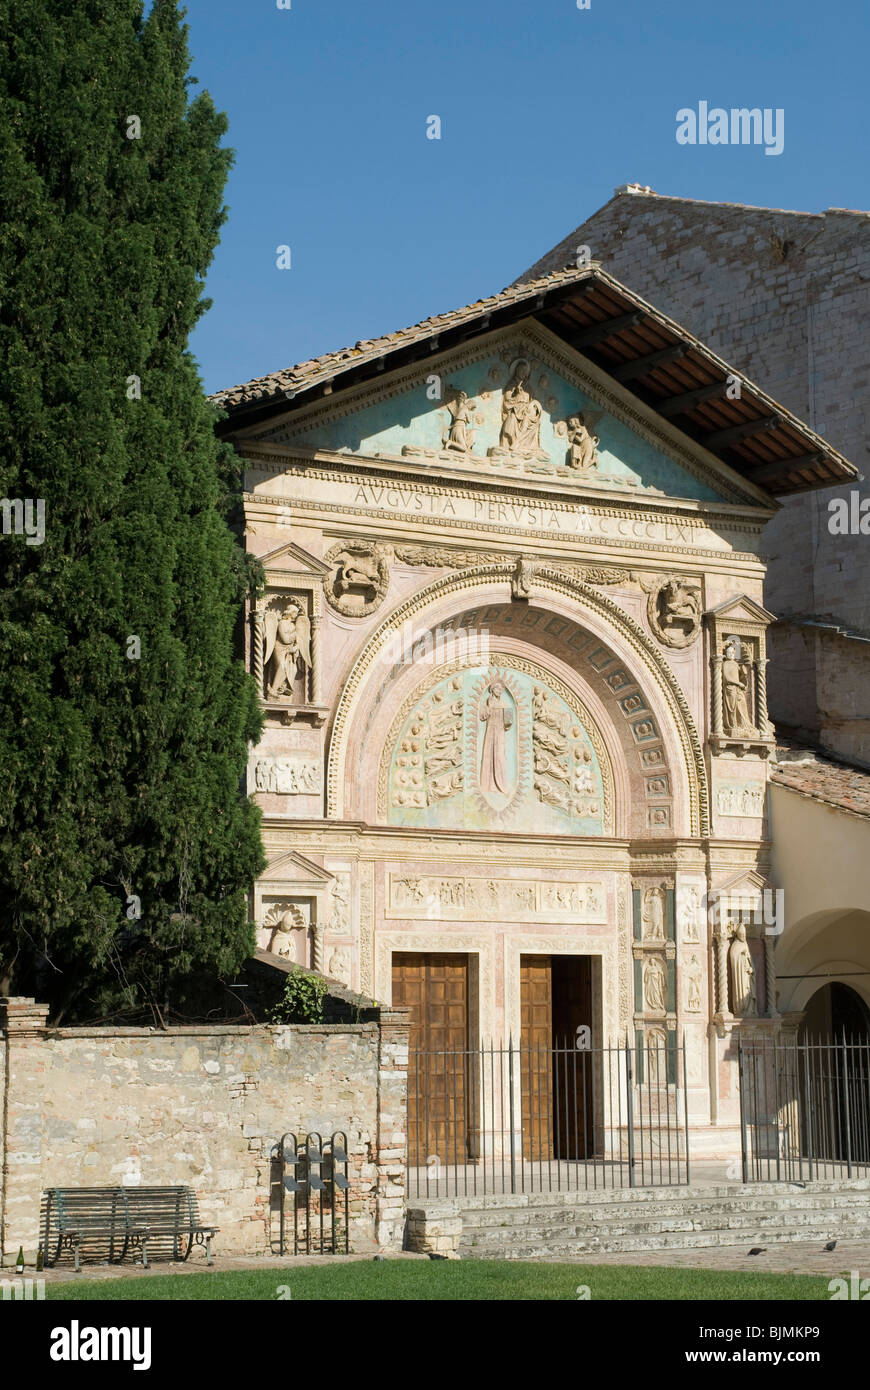 Italien, Umbrien, Perugia, Oratorium San Bernadino | Italy, Umbria, Perugia, Oratorio San Bernadino Stock Photo